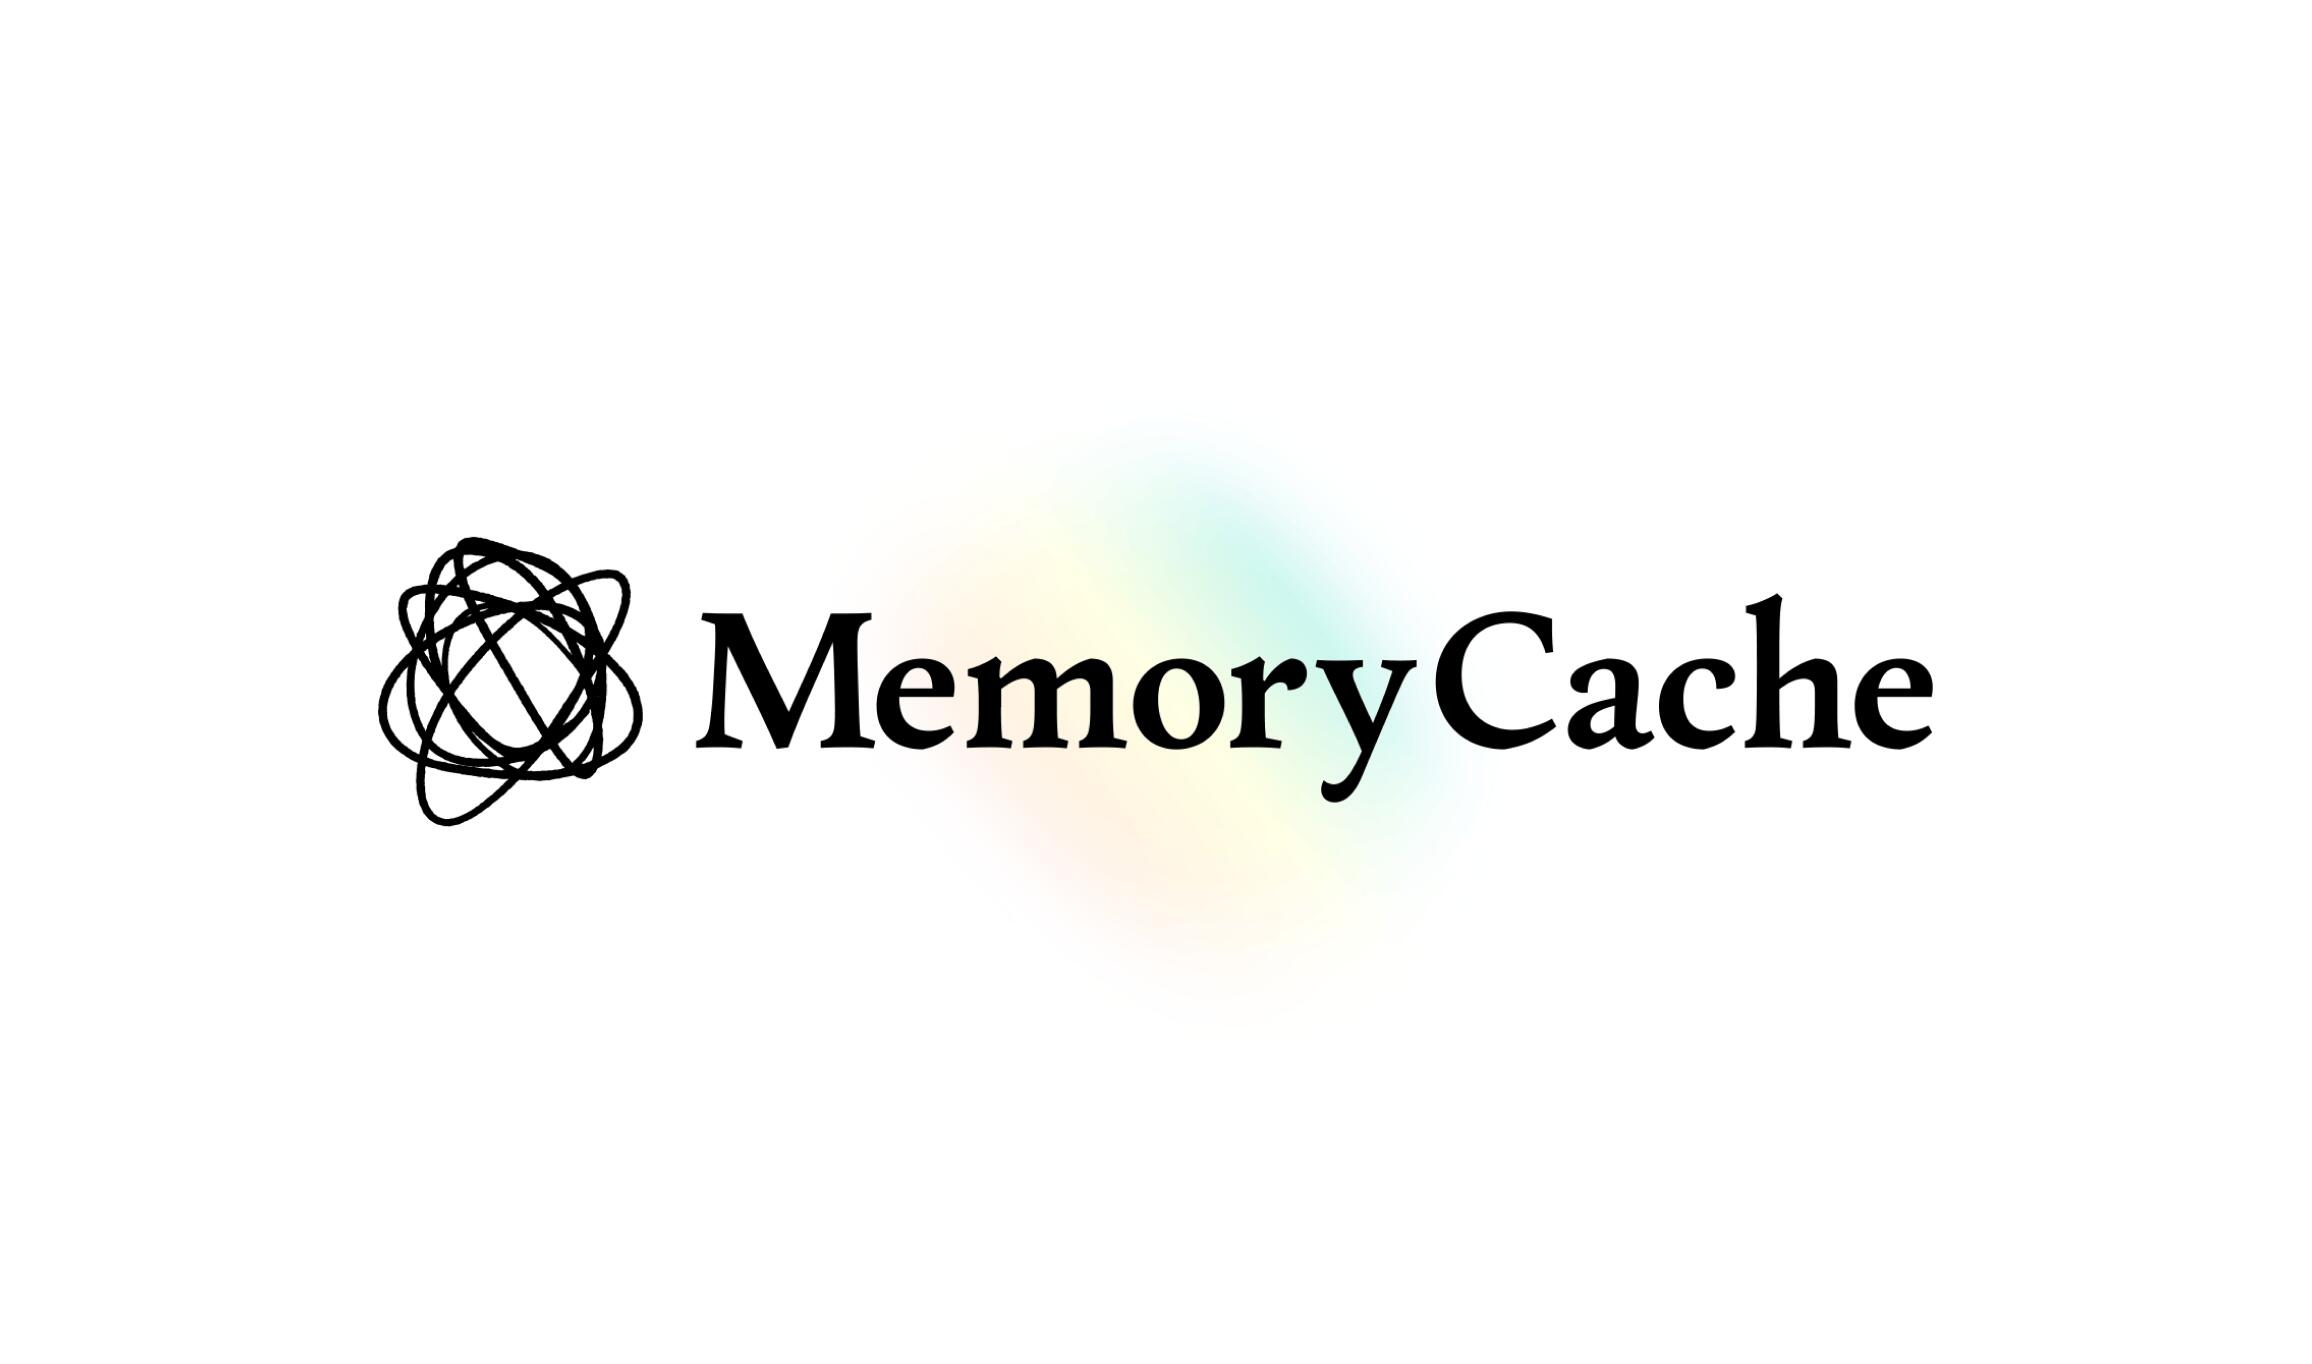 Mozilla MemoryCache AI Offline Bot